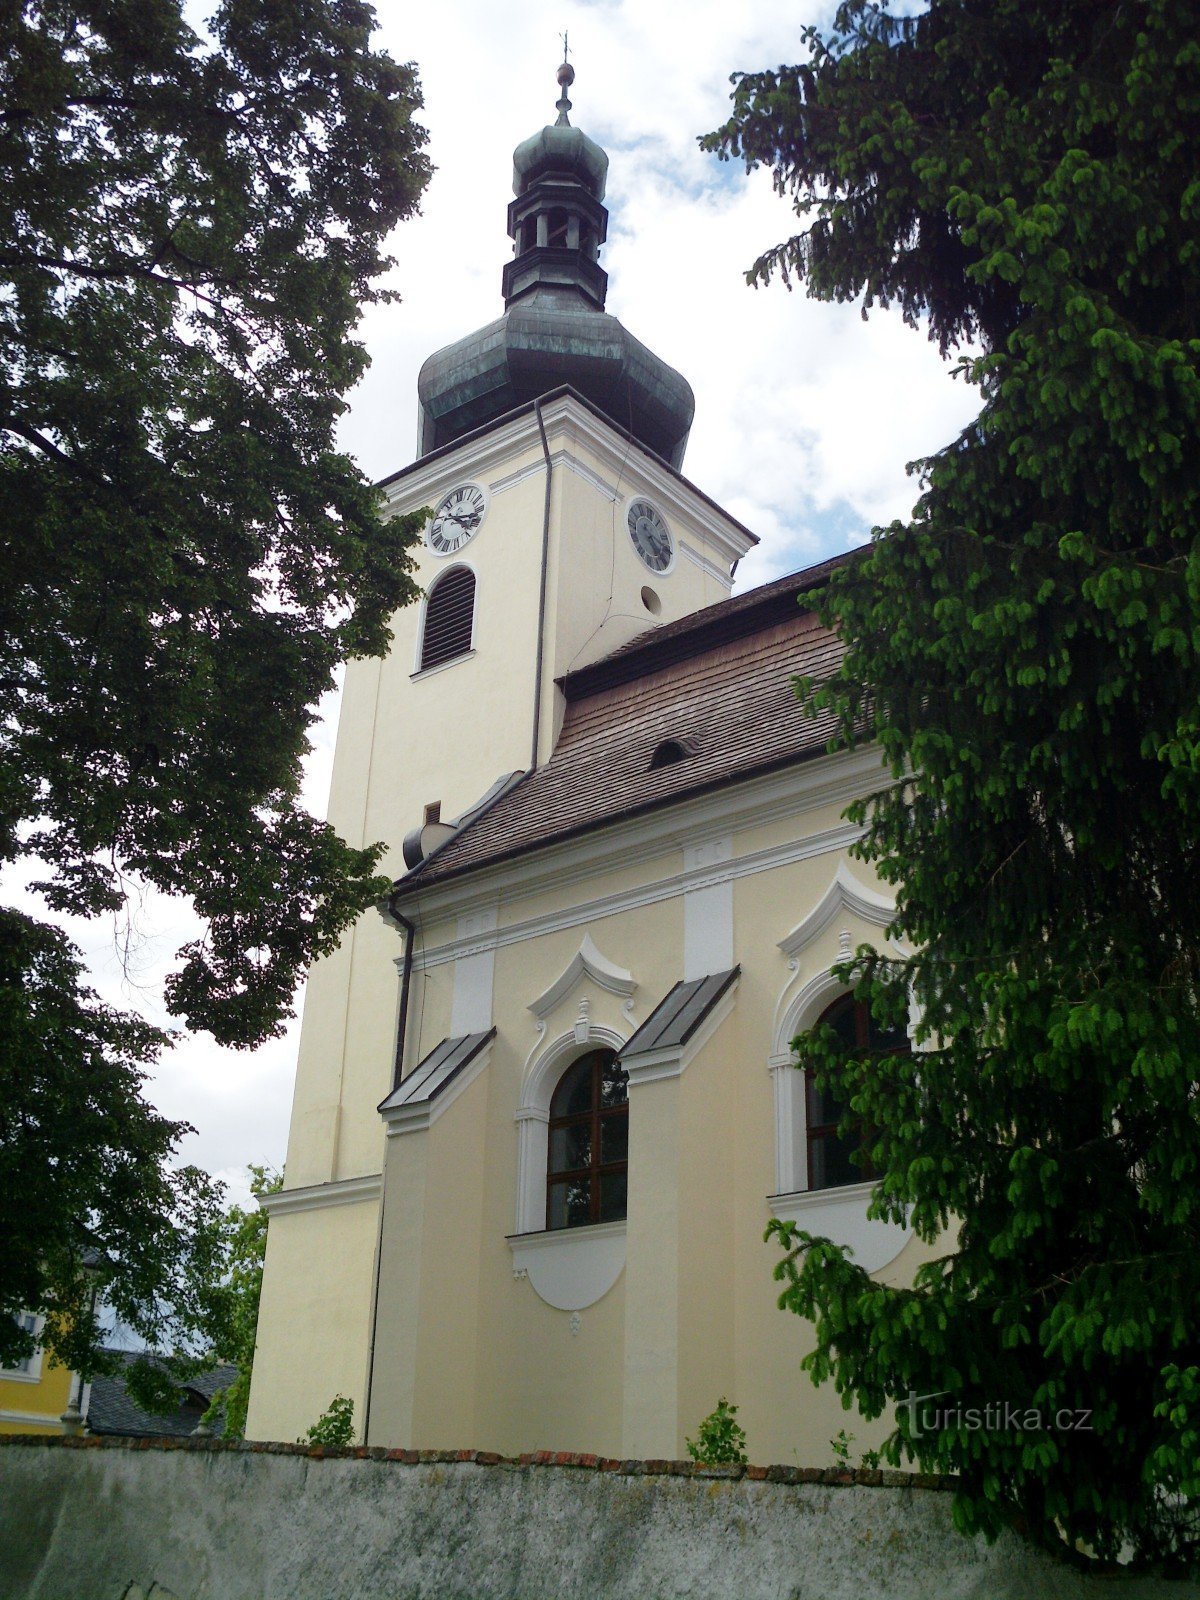 Buchlovice - chiesa di S. Martino